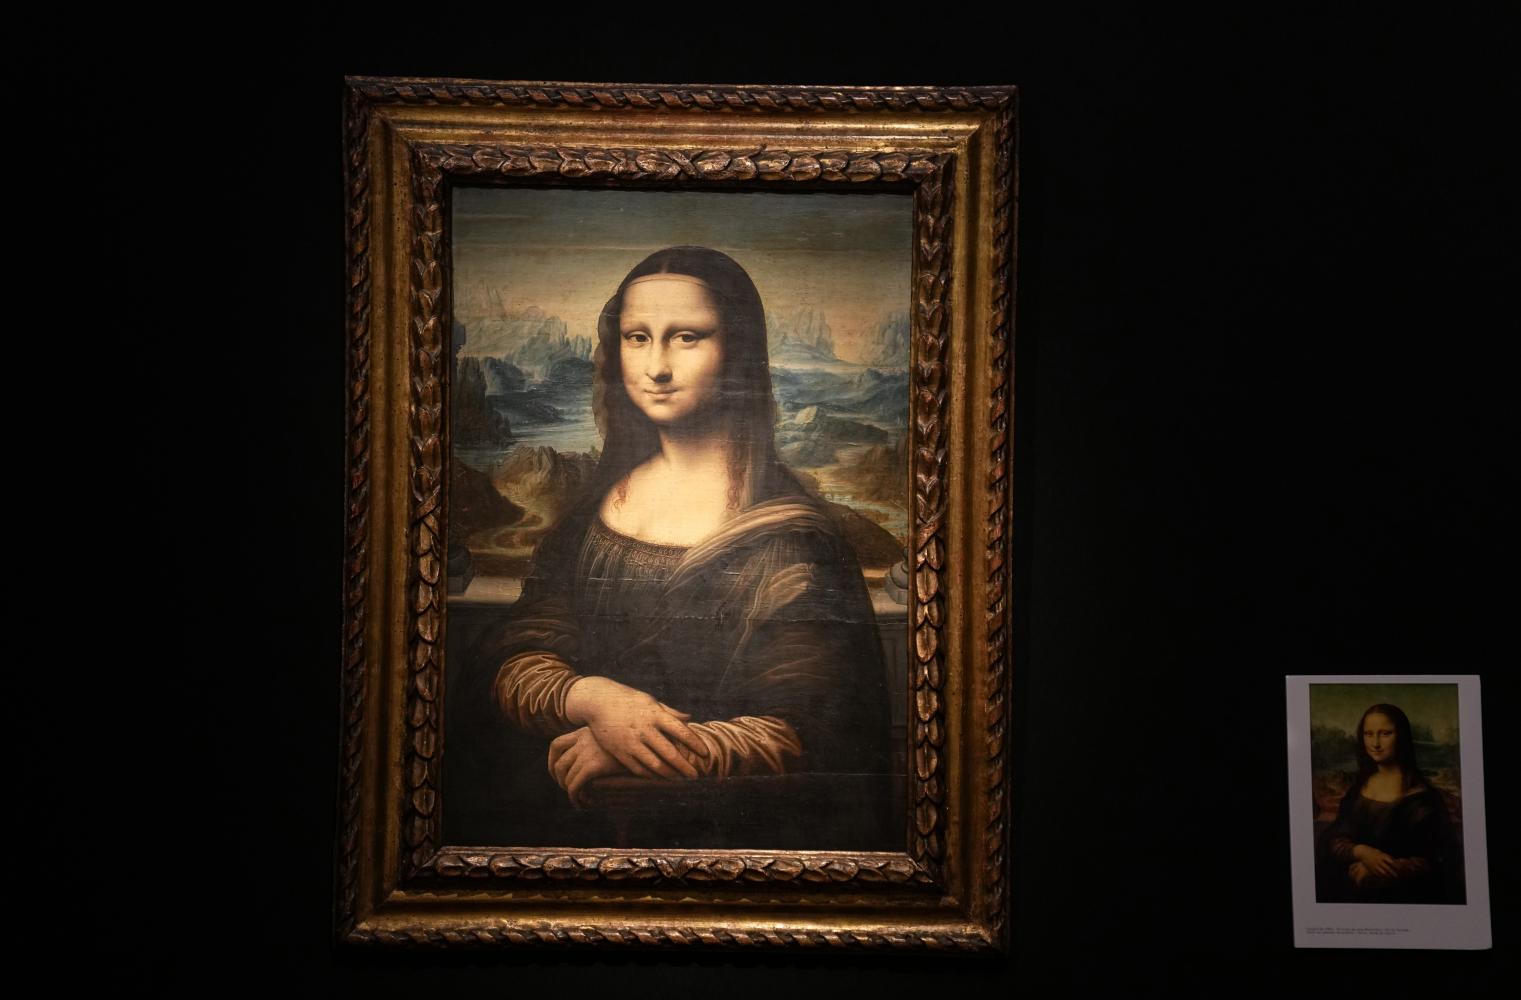 Eine Kopie von Leonardo da Vincis berühmter Mona Lisa, die um 1600 auf eine Tafel gemalt wurde. Diese unglaublich originalgetreue Version unterstreicht die frühe Faszination für da Vinci und sein Werk